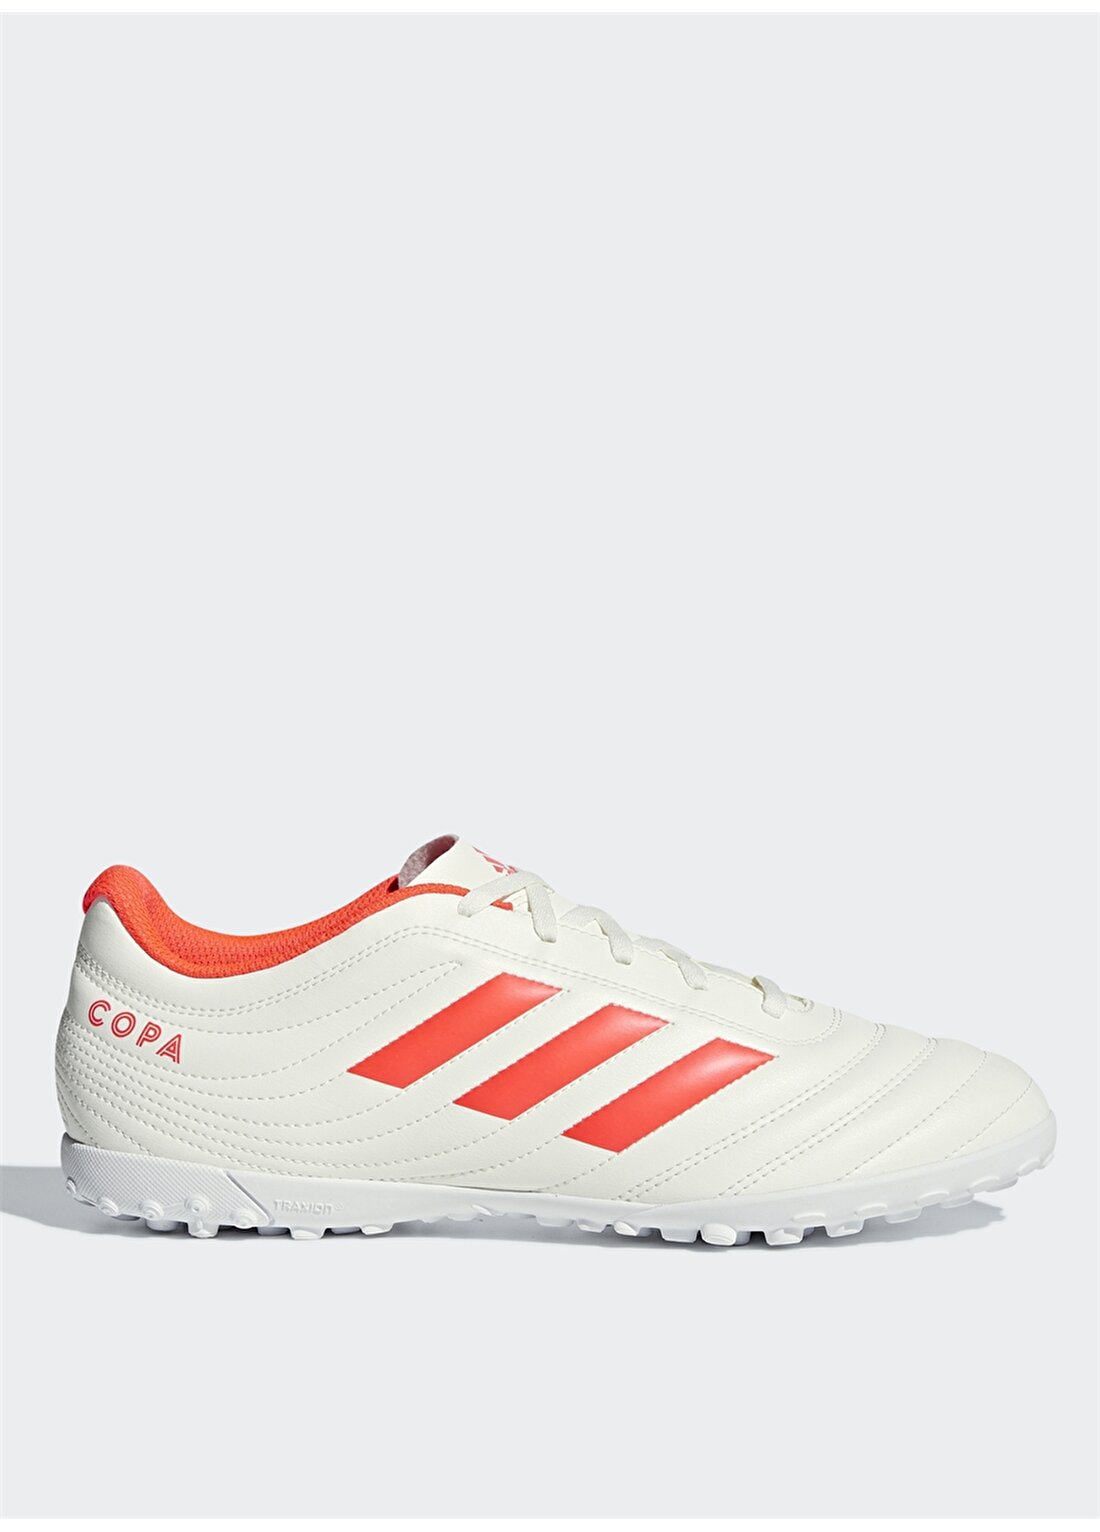 Adidas D98070 Copa 19.4 Tf Futbol Ayakkabısı